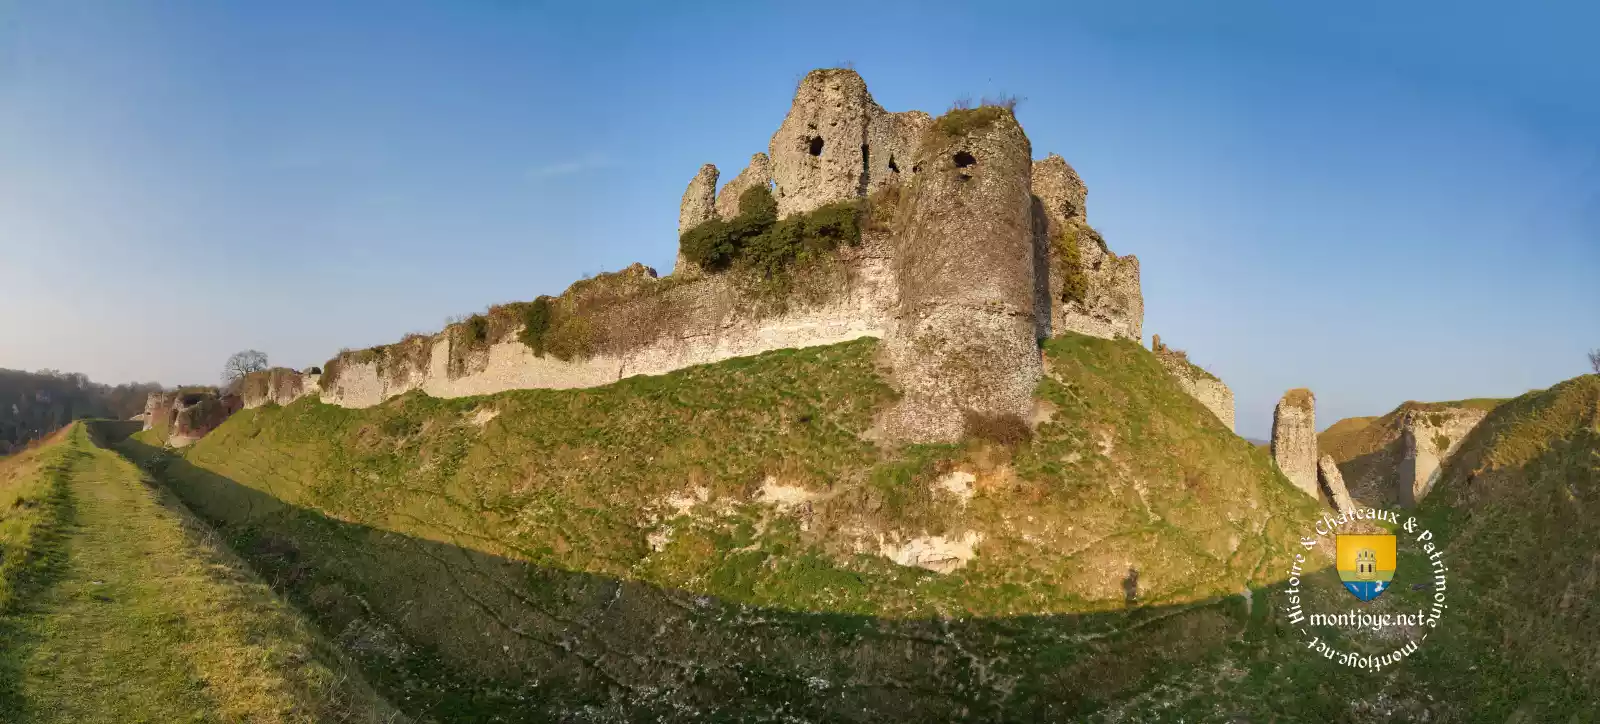 castle normandy arques la bataille